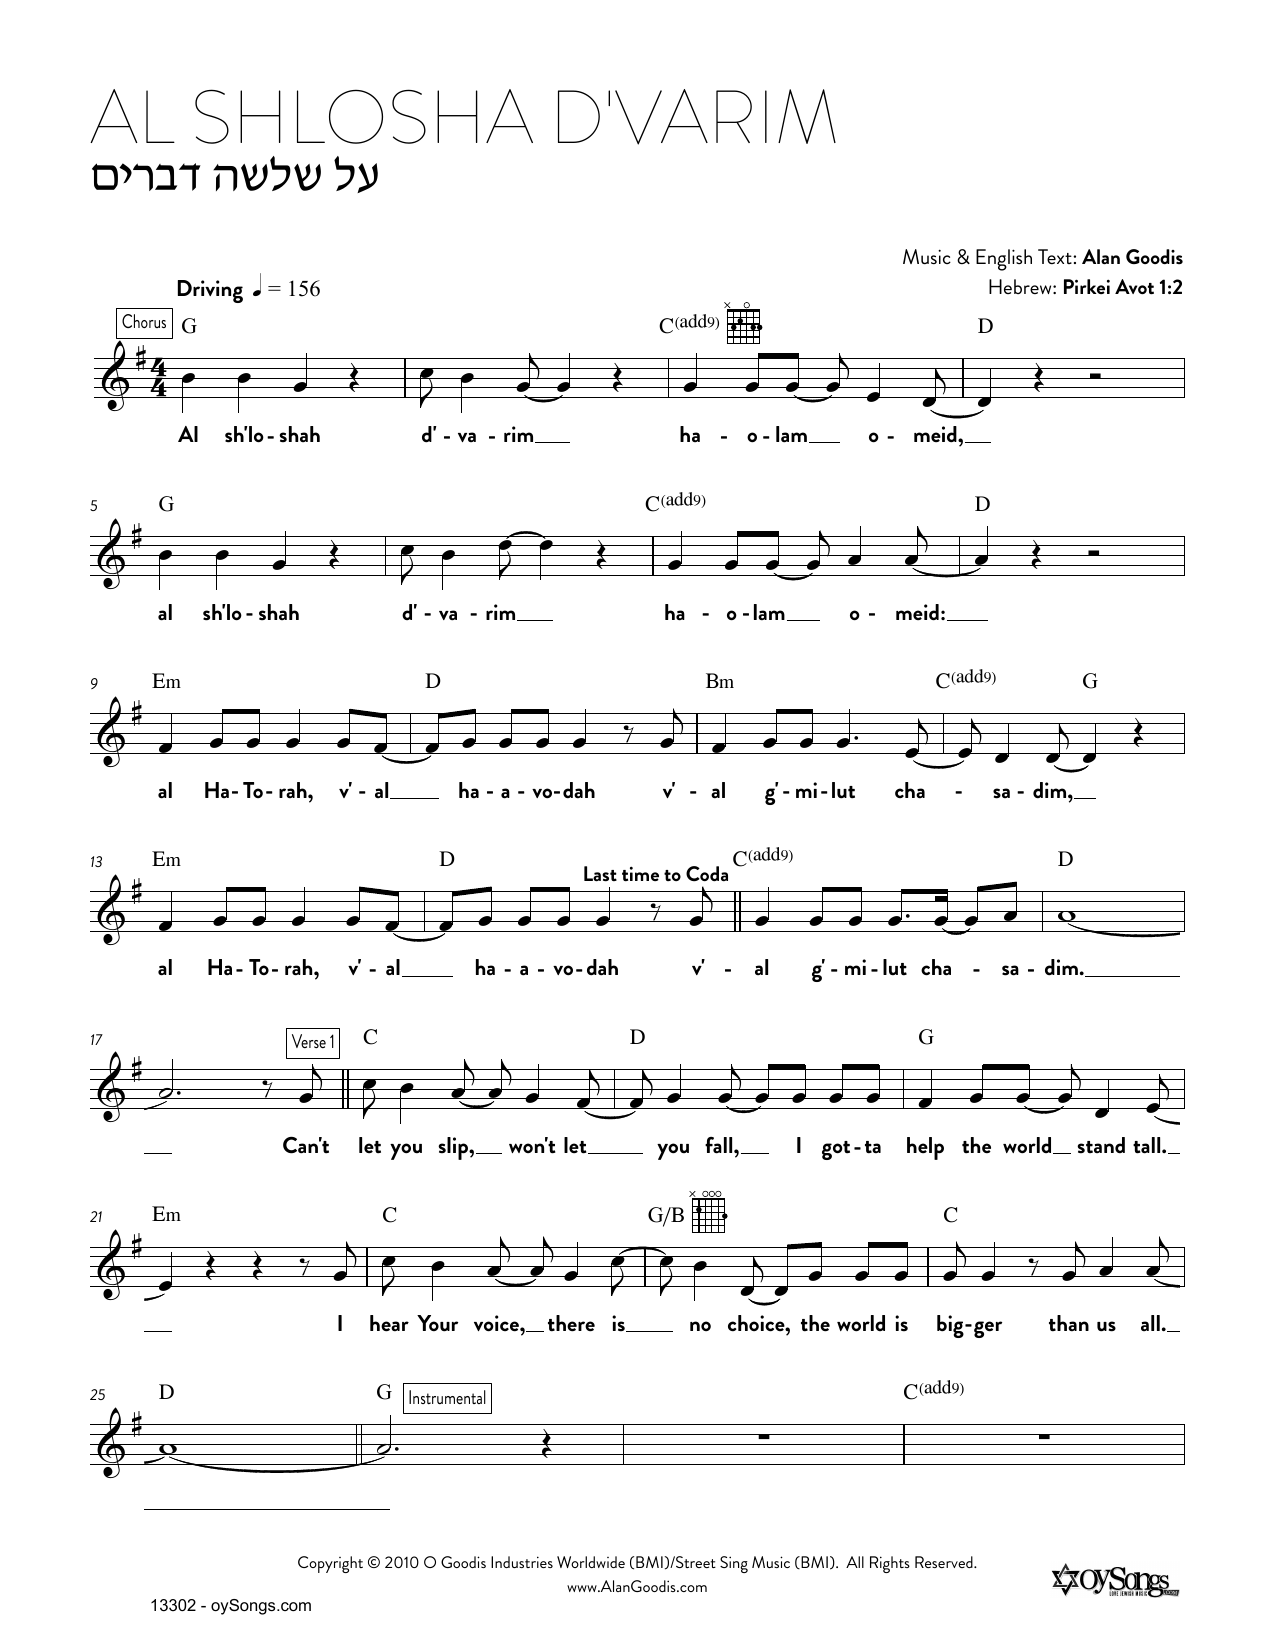 Alan Goodis Al Shlosha D'varim Sheet Music Notes & Chords for Real Book – Melody, Lyrics & Chords - Download or Print PDF